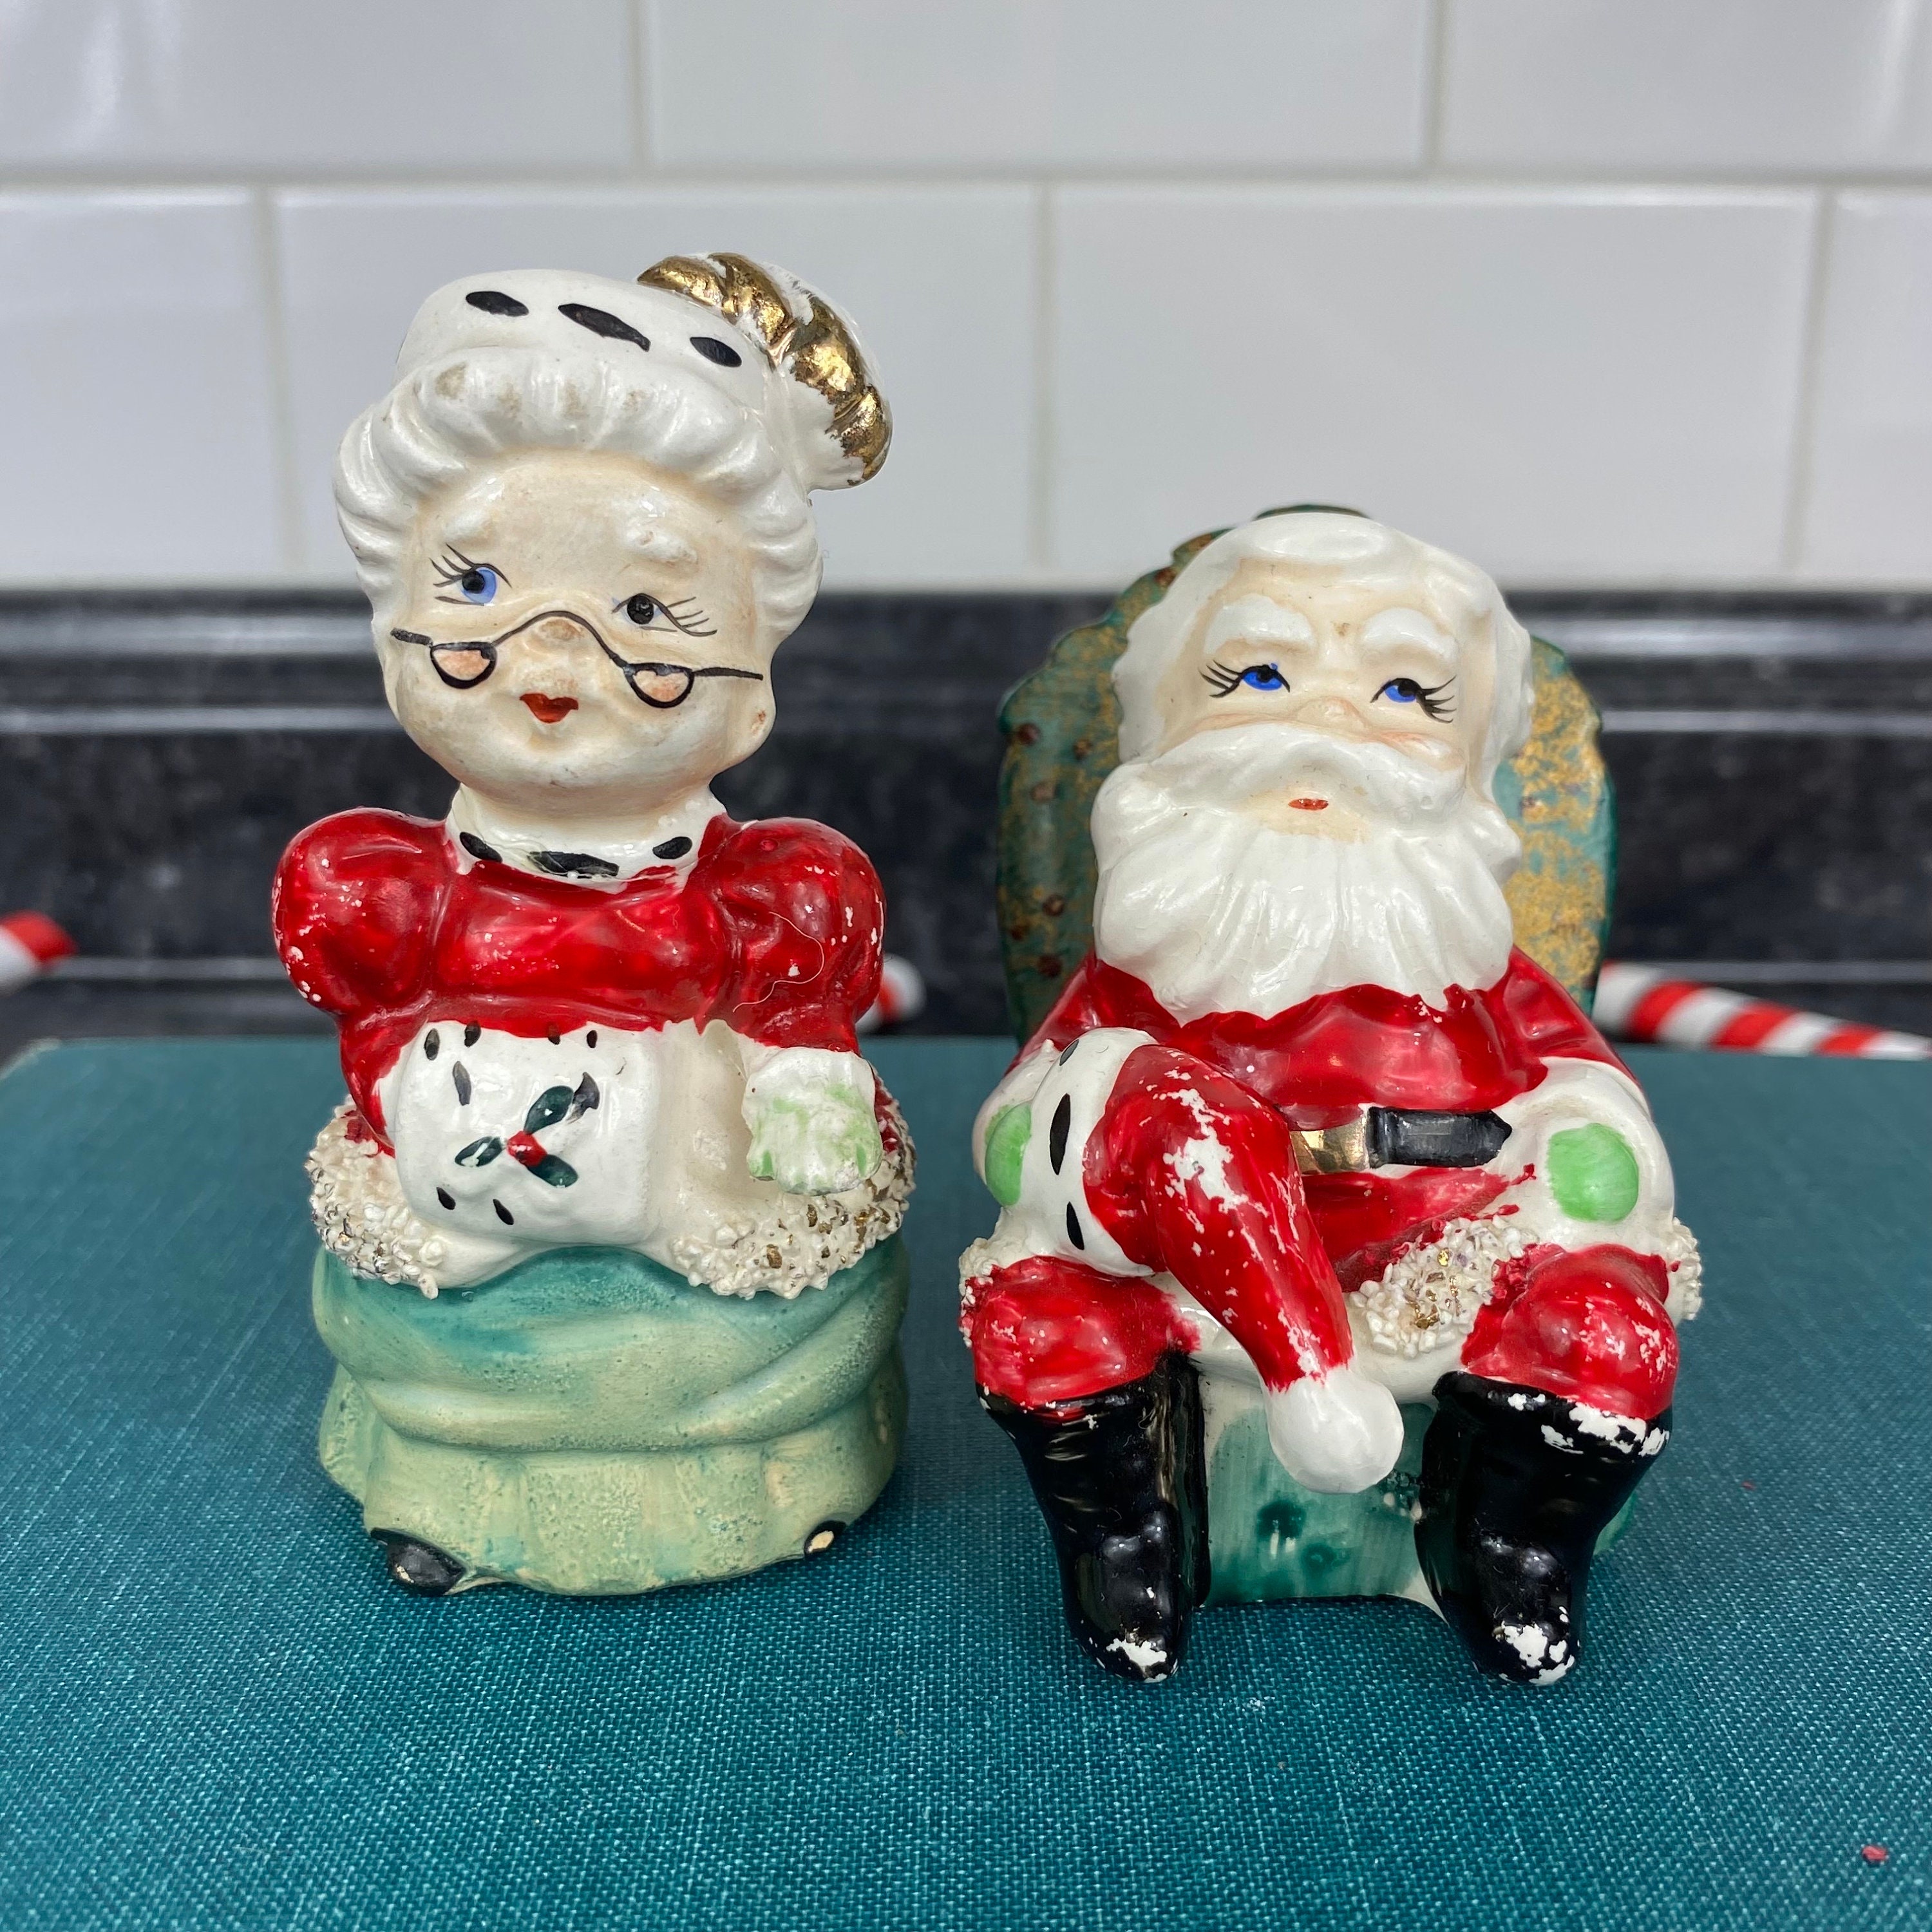 Mr. Christmas 6 Nostalgic Salt & Pepper Shaker Figures 